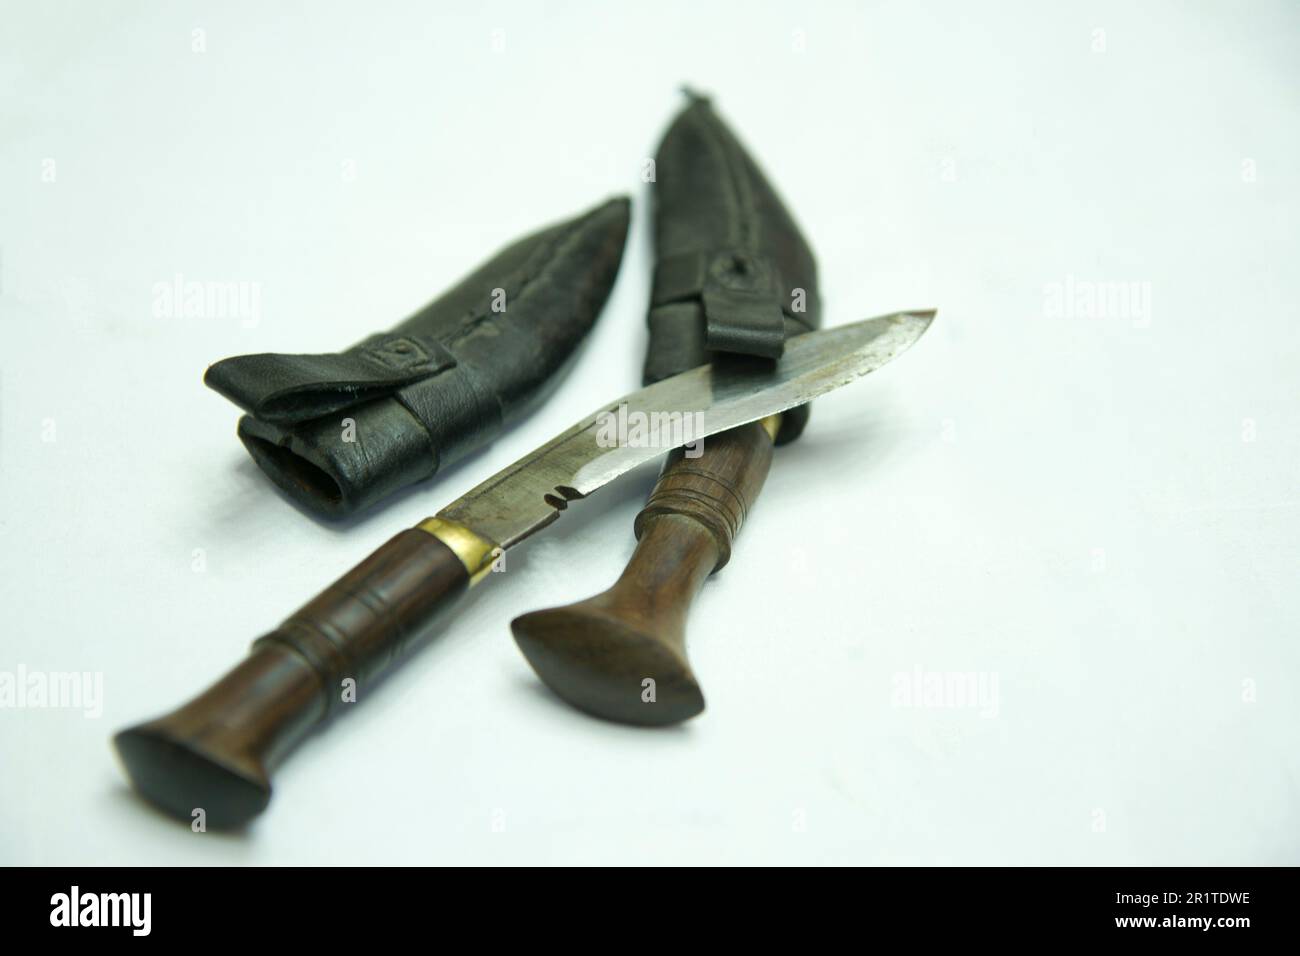 Ein Messer und eine Messerabdeckung liegen auf einer weißen Oberfläche. Nepali-Khukuri-Messer Stockfoto